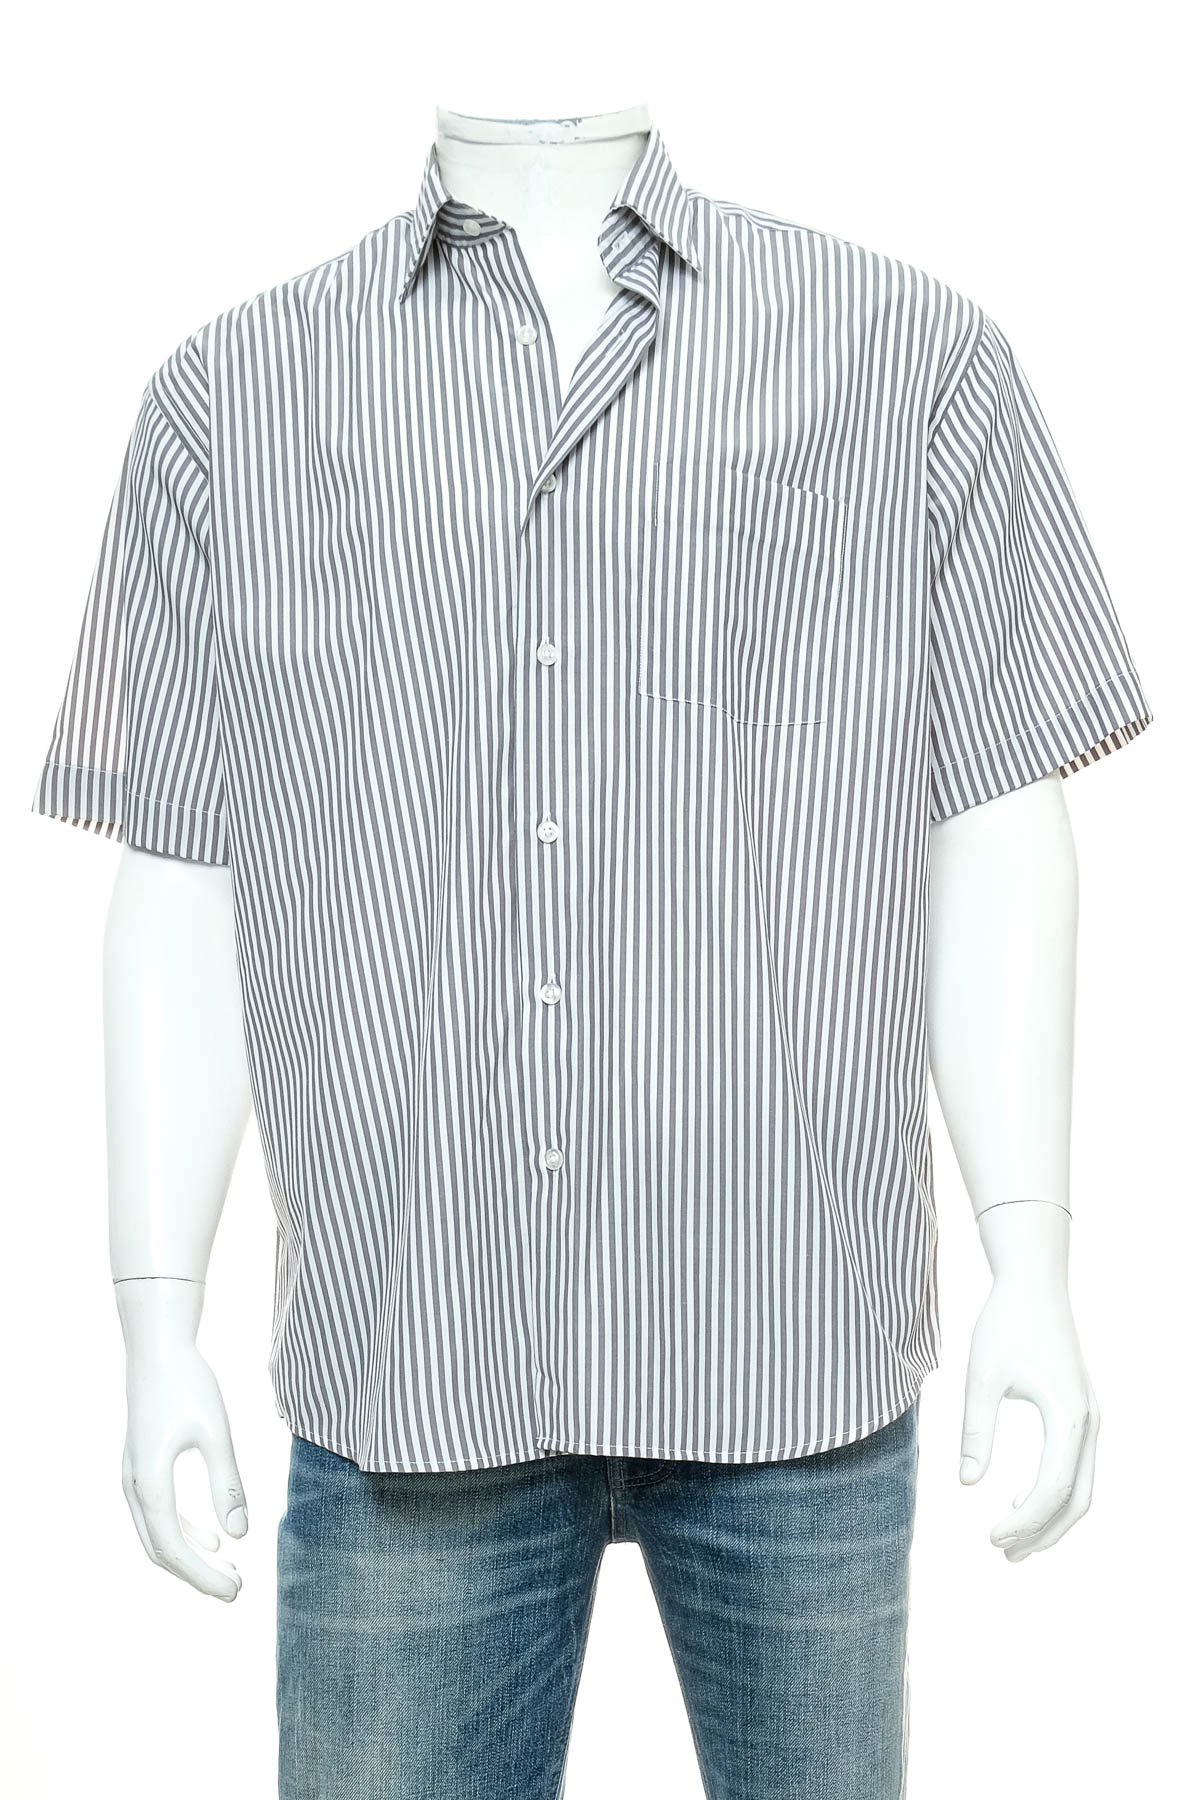 Ανδρικό πουκάμισο - Rengima - 0